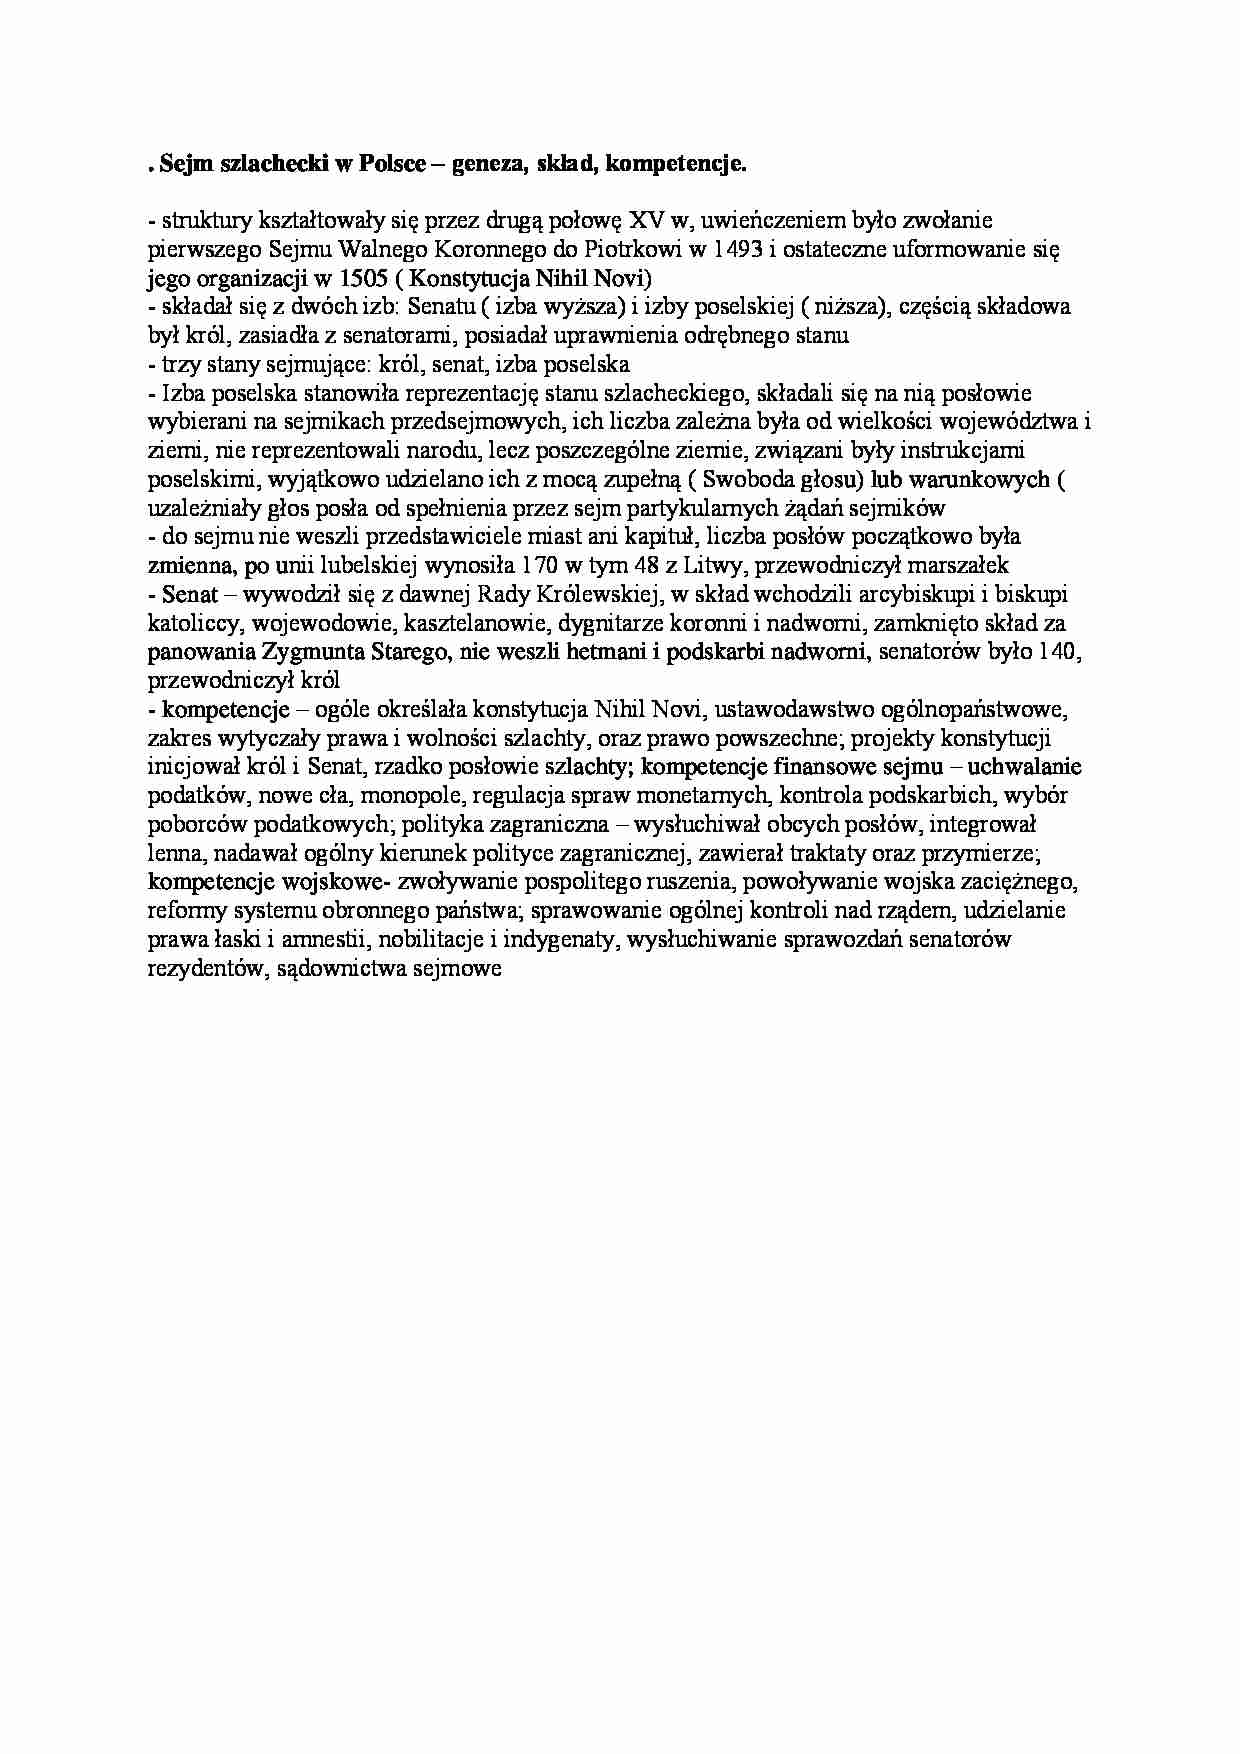 Sejm szlachecki w Polsce - wstęp - strona 1